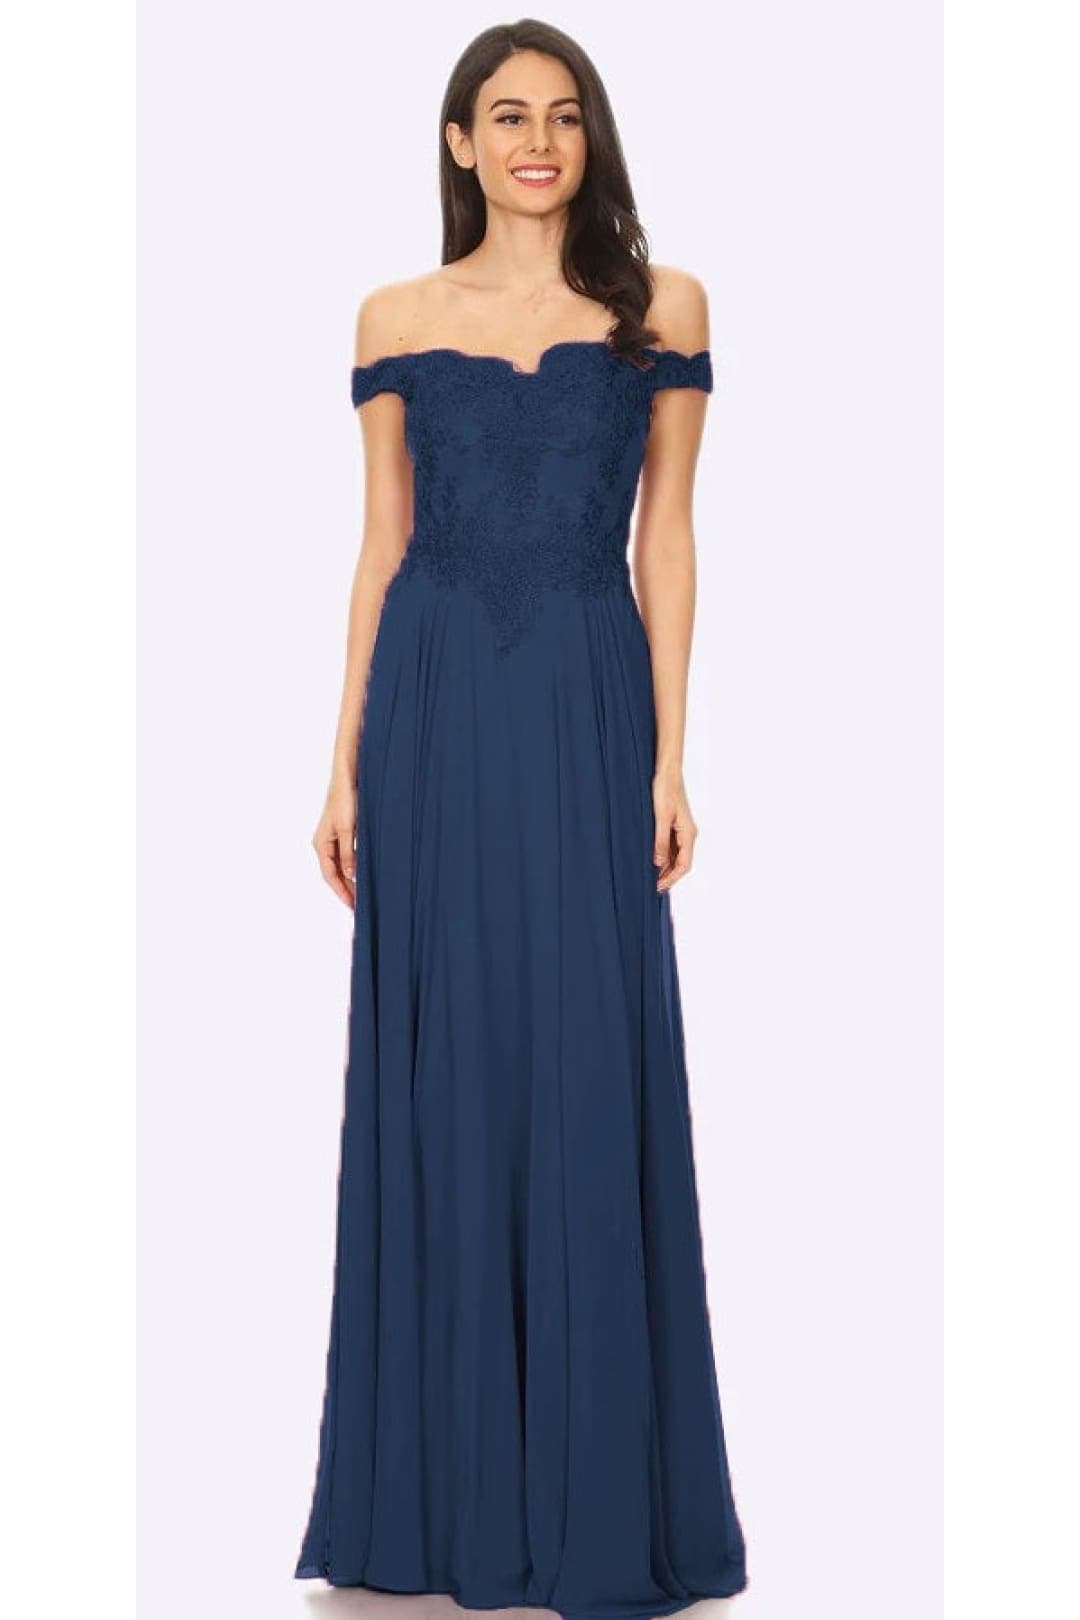 J & J 3073 Off The Shoulder Prom Long Dresses - NAVY BLUE / 6